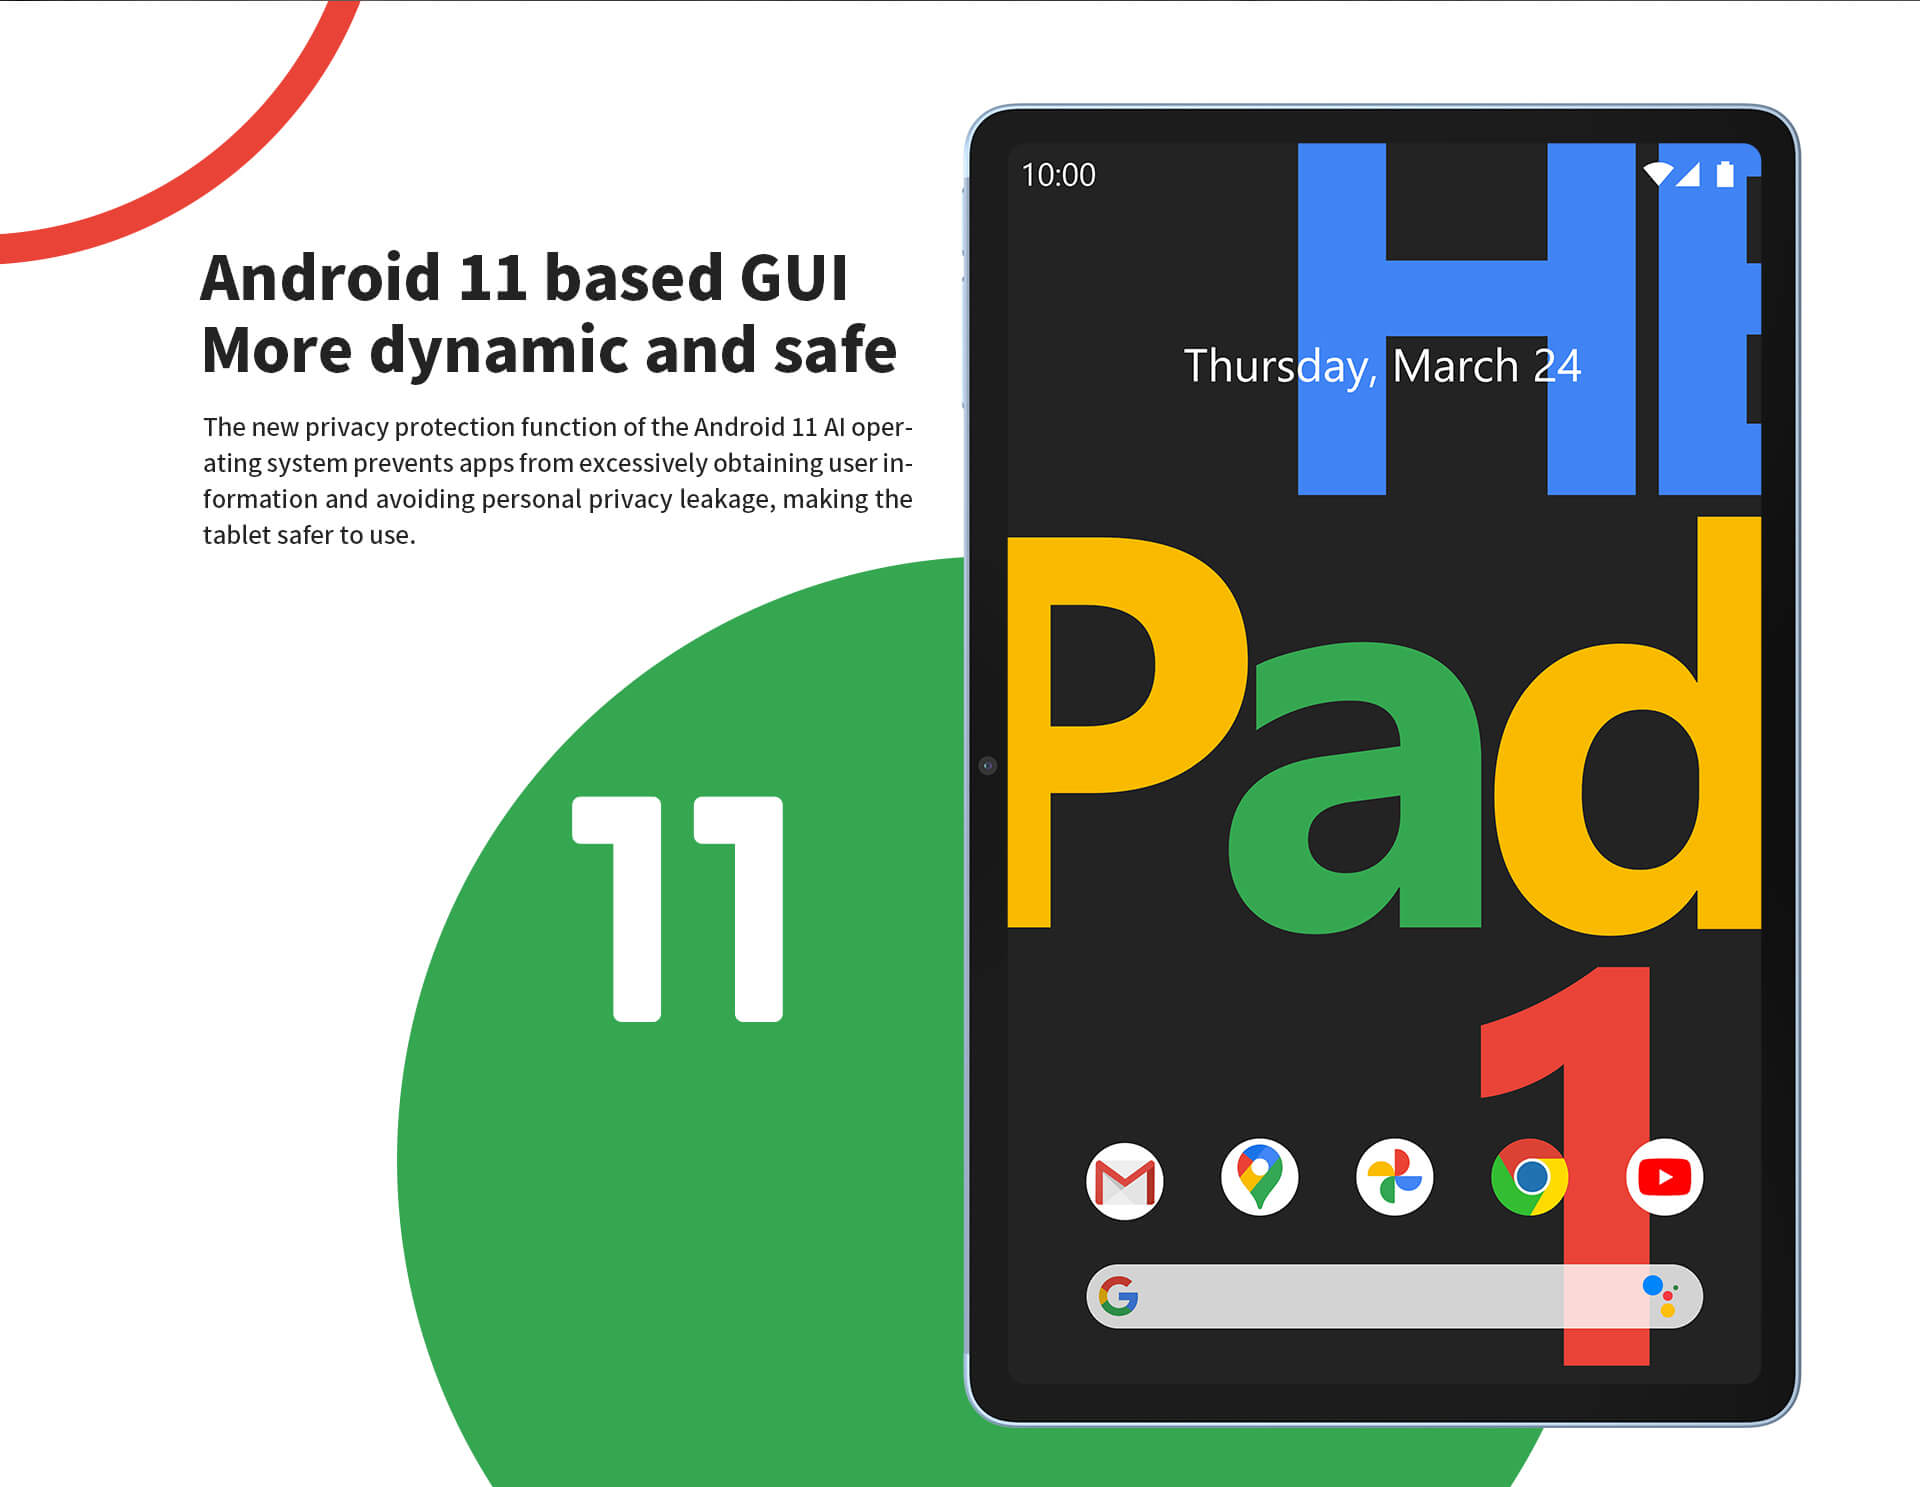 GUI basata su Android 11 più dinamica e sicura